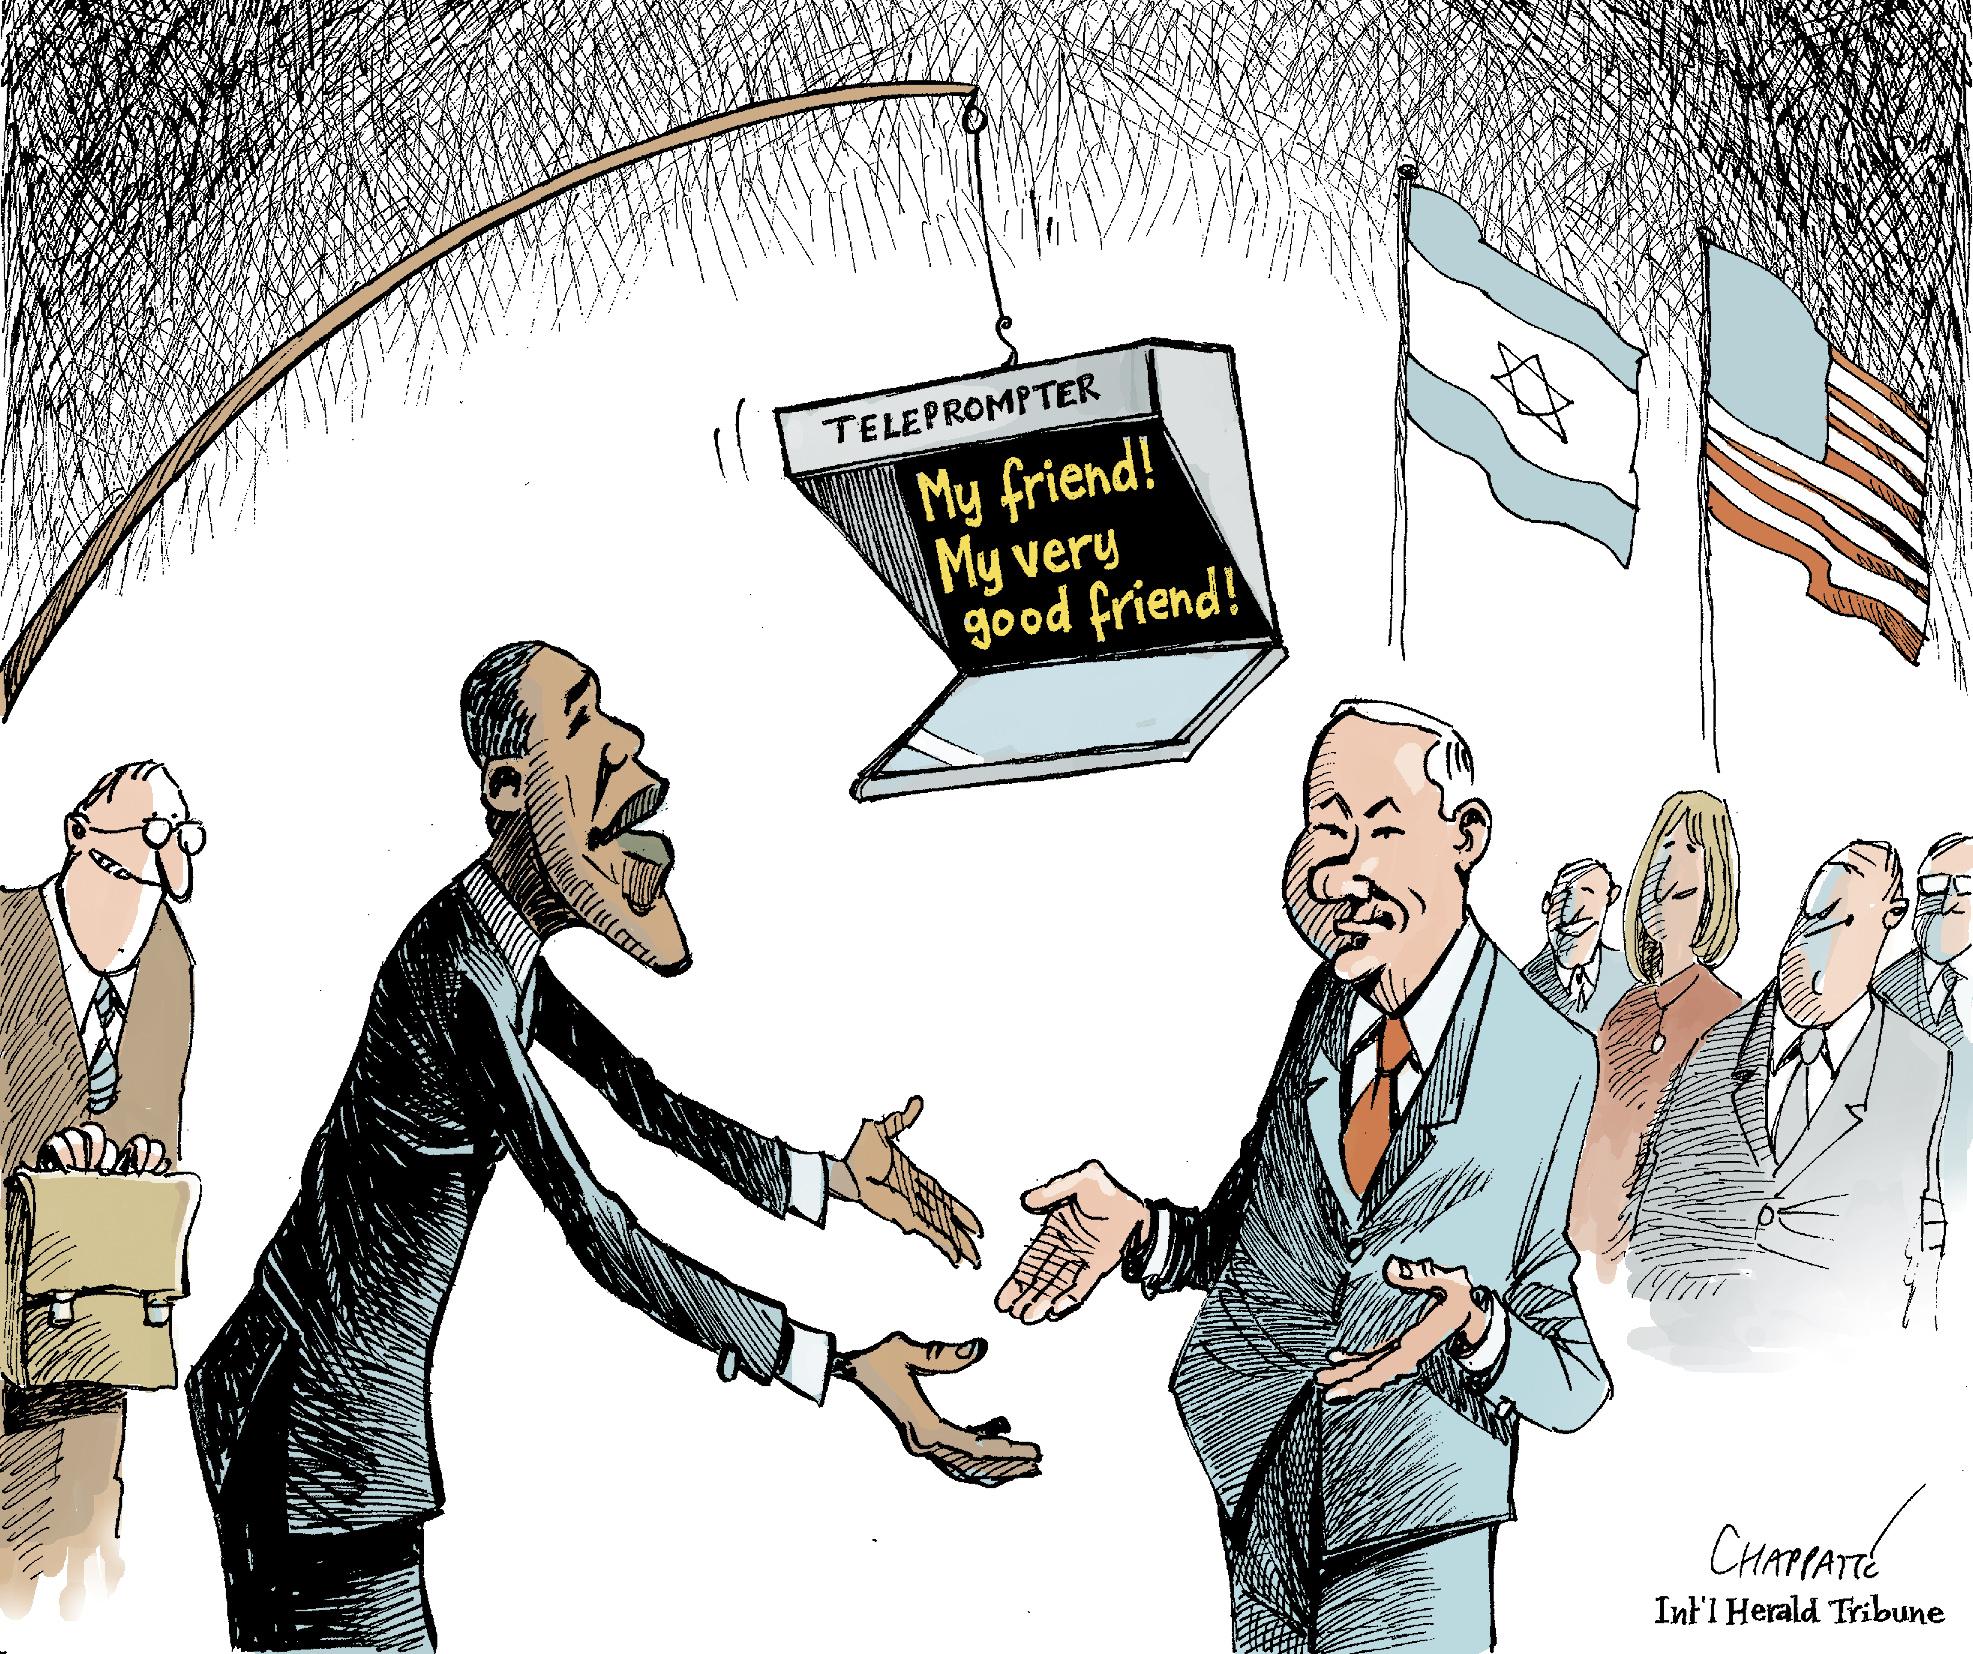 Obma and Netanyahu make friends